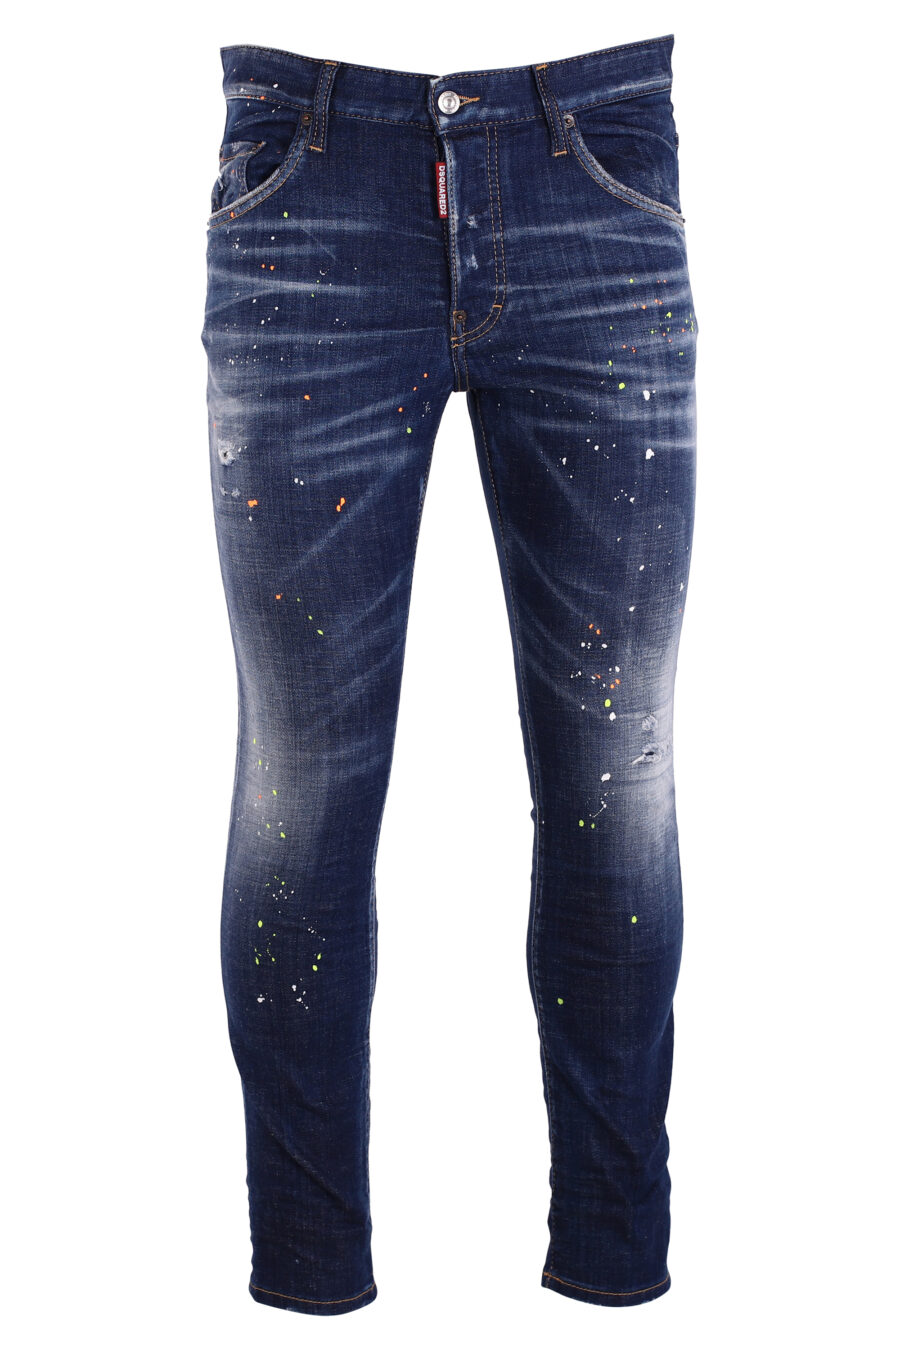 Pantalón vaquero "skater jean" azul con splash pintura blanca - IMG 8993